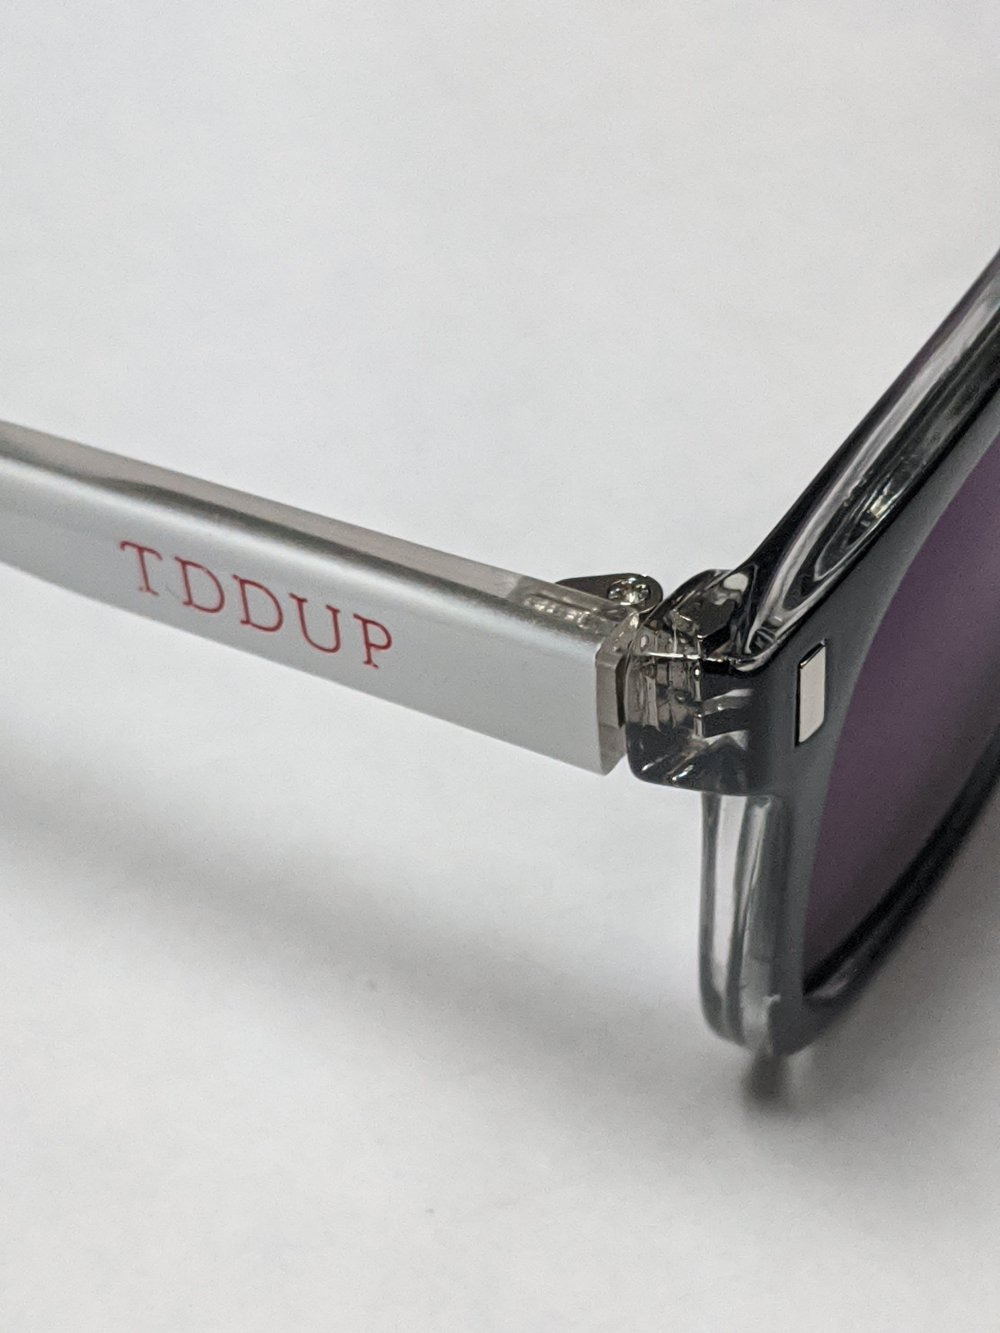 Image of TDDUP Frames 